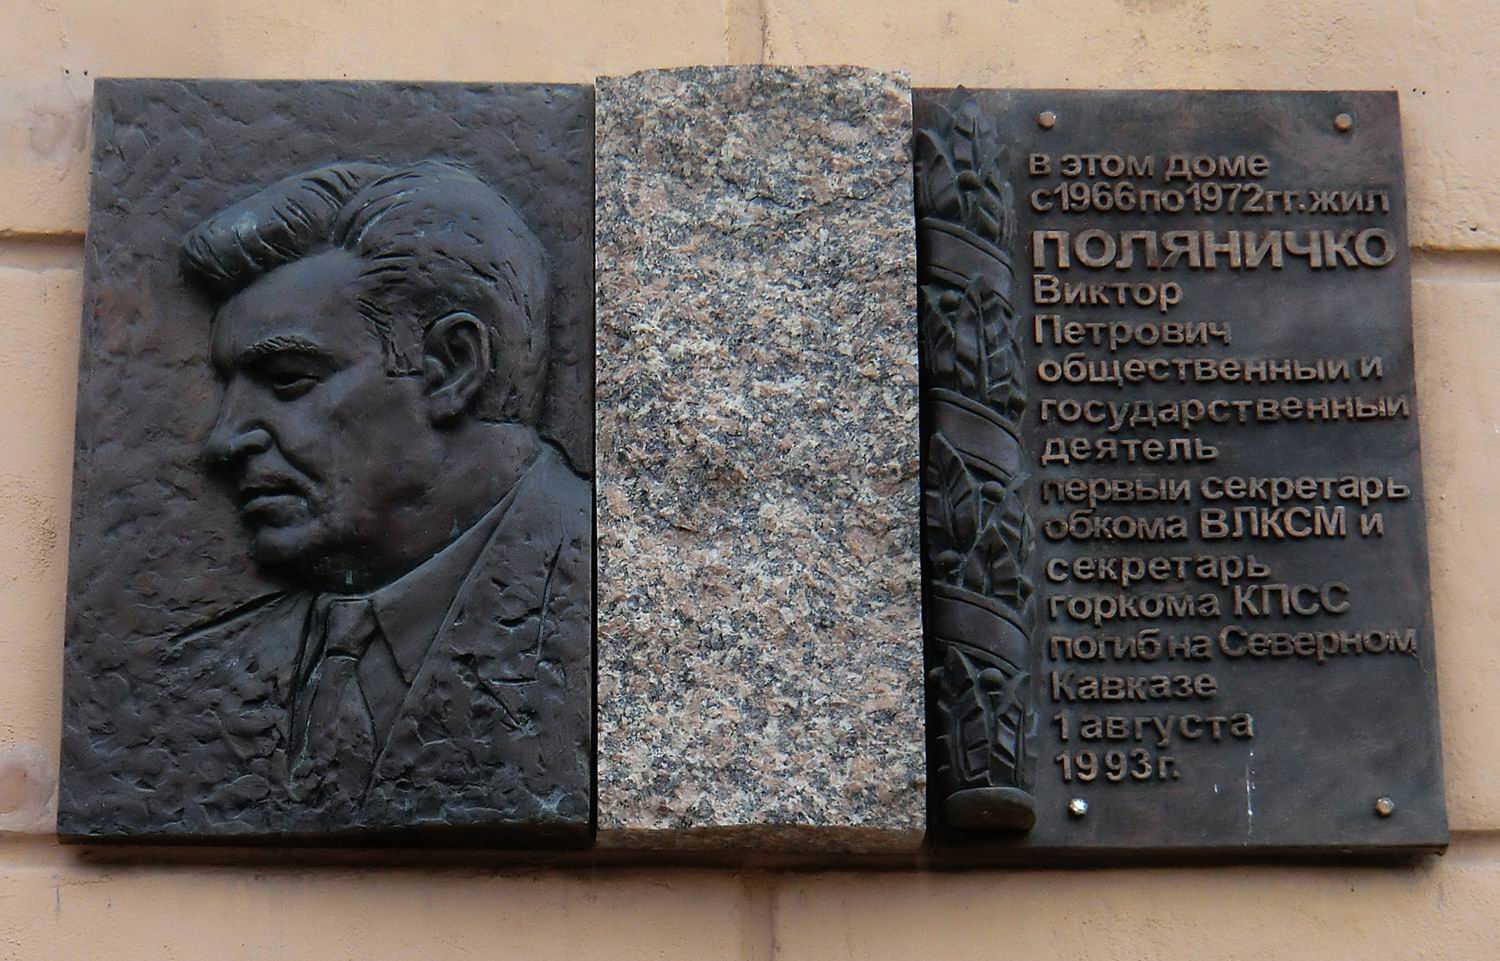 Мемориальная доска Поляничко В.П. (1937-1993), в Челябинске, на улице Коммуны, дом 71.